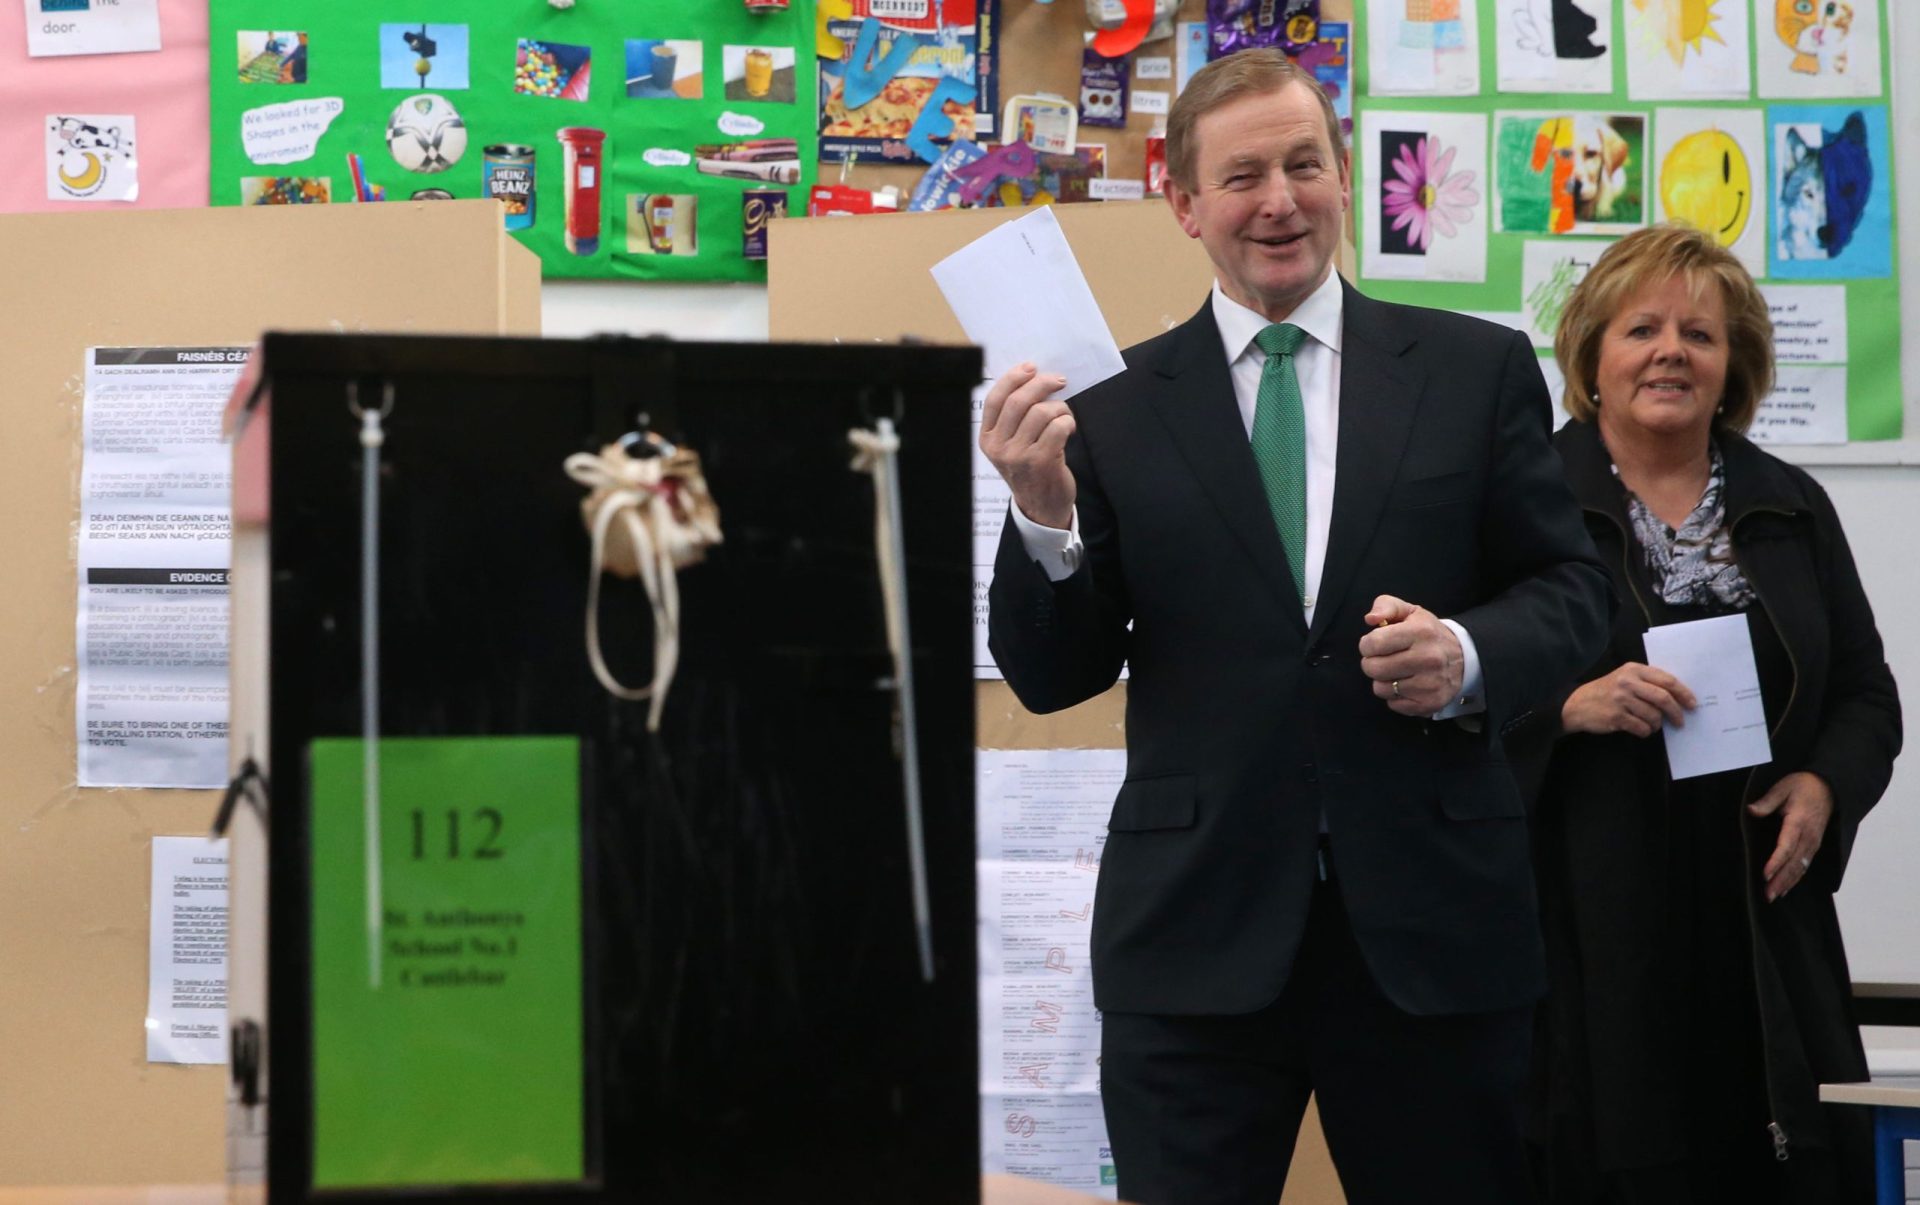 Eleições dão impasse na Irlanda